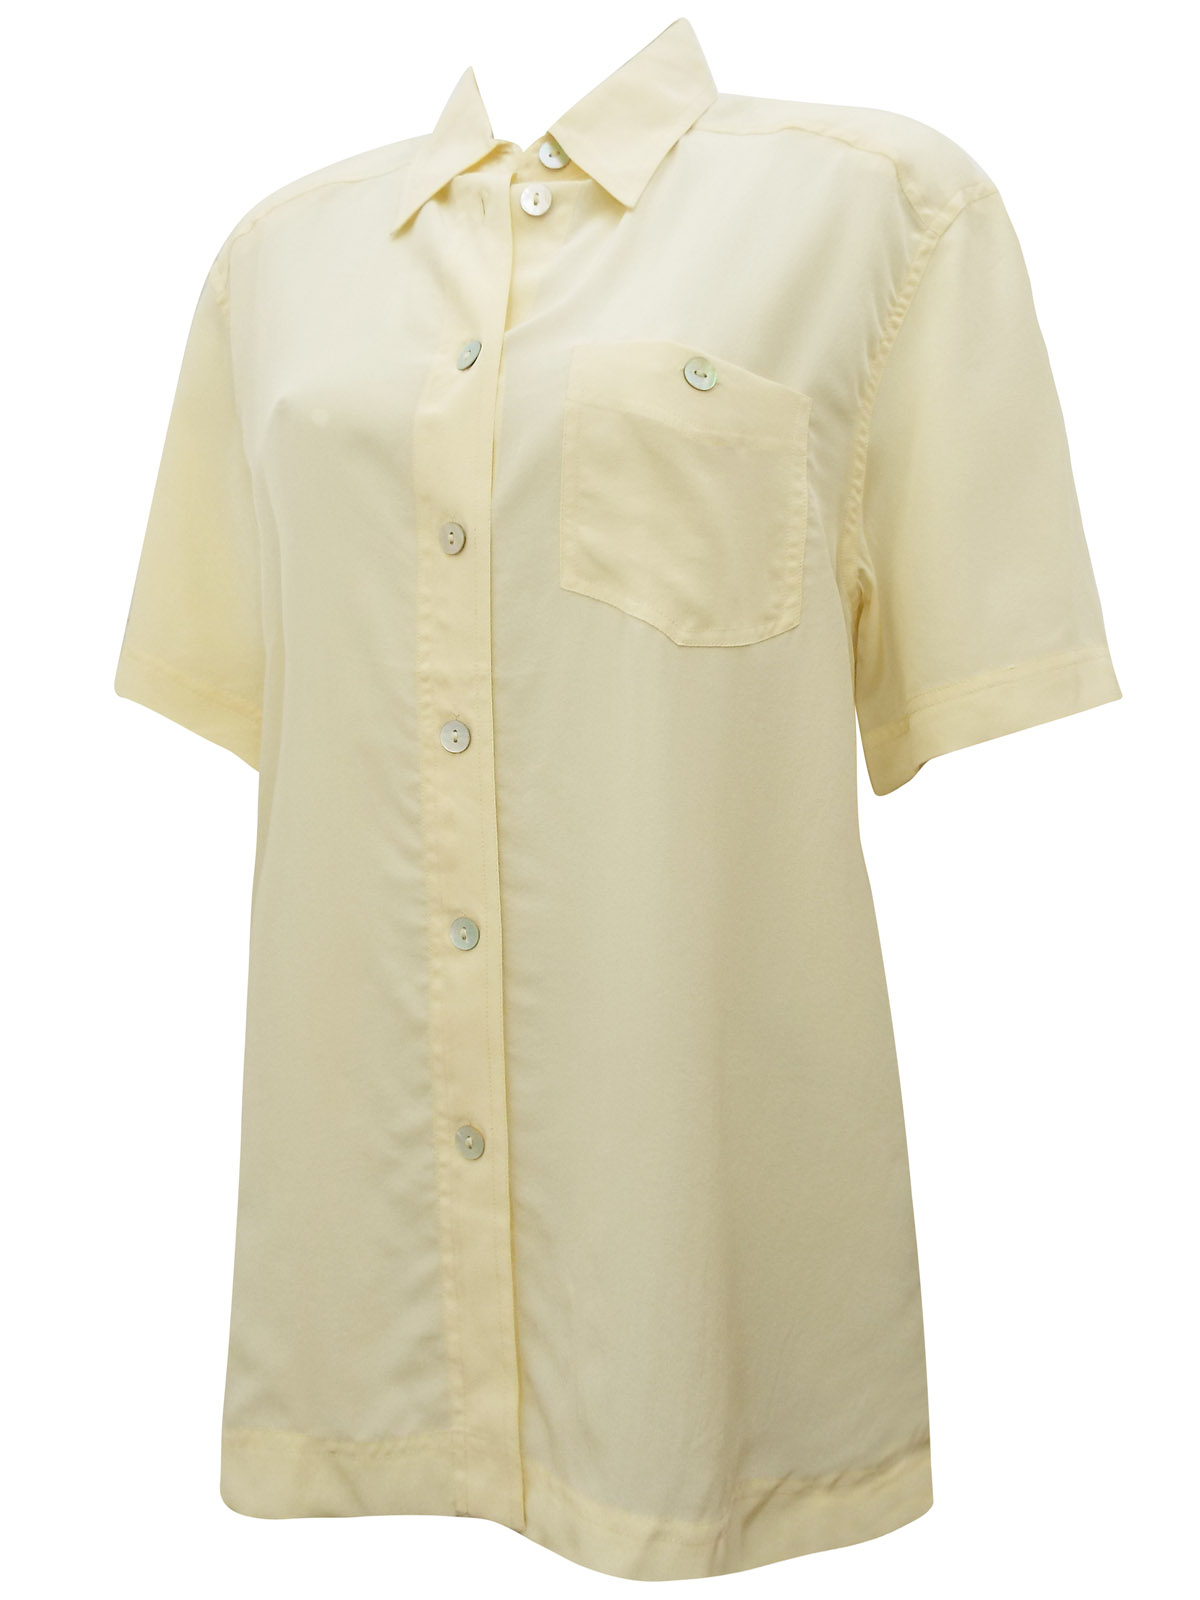 Gira Puccino BANANA Pure Silk Short Sleeve Shirt - Size 12